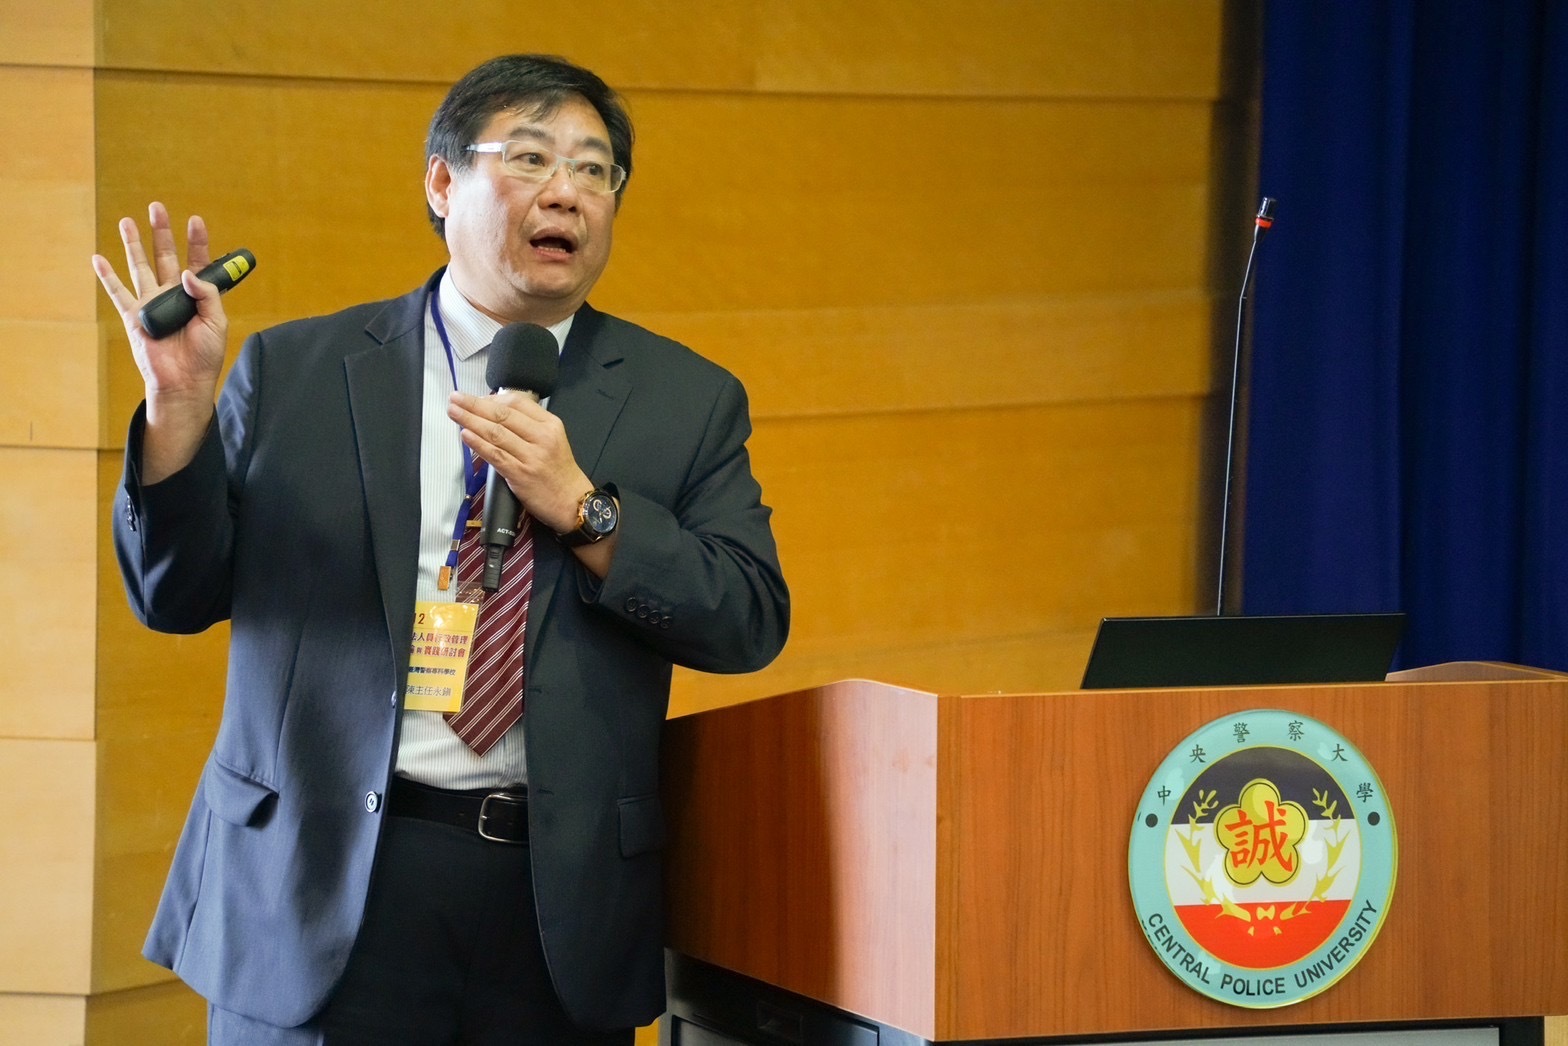 第一場次研討會主講人陳主任永鎭發表「警察使用槍械適法性之研究」